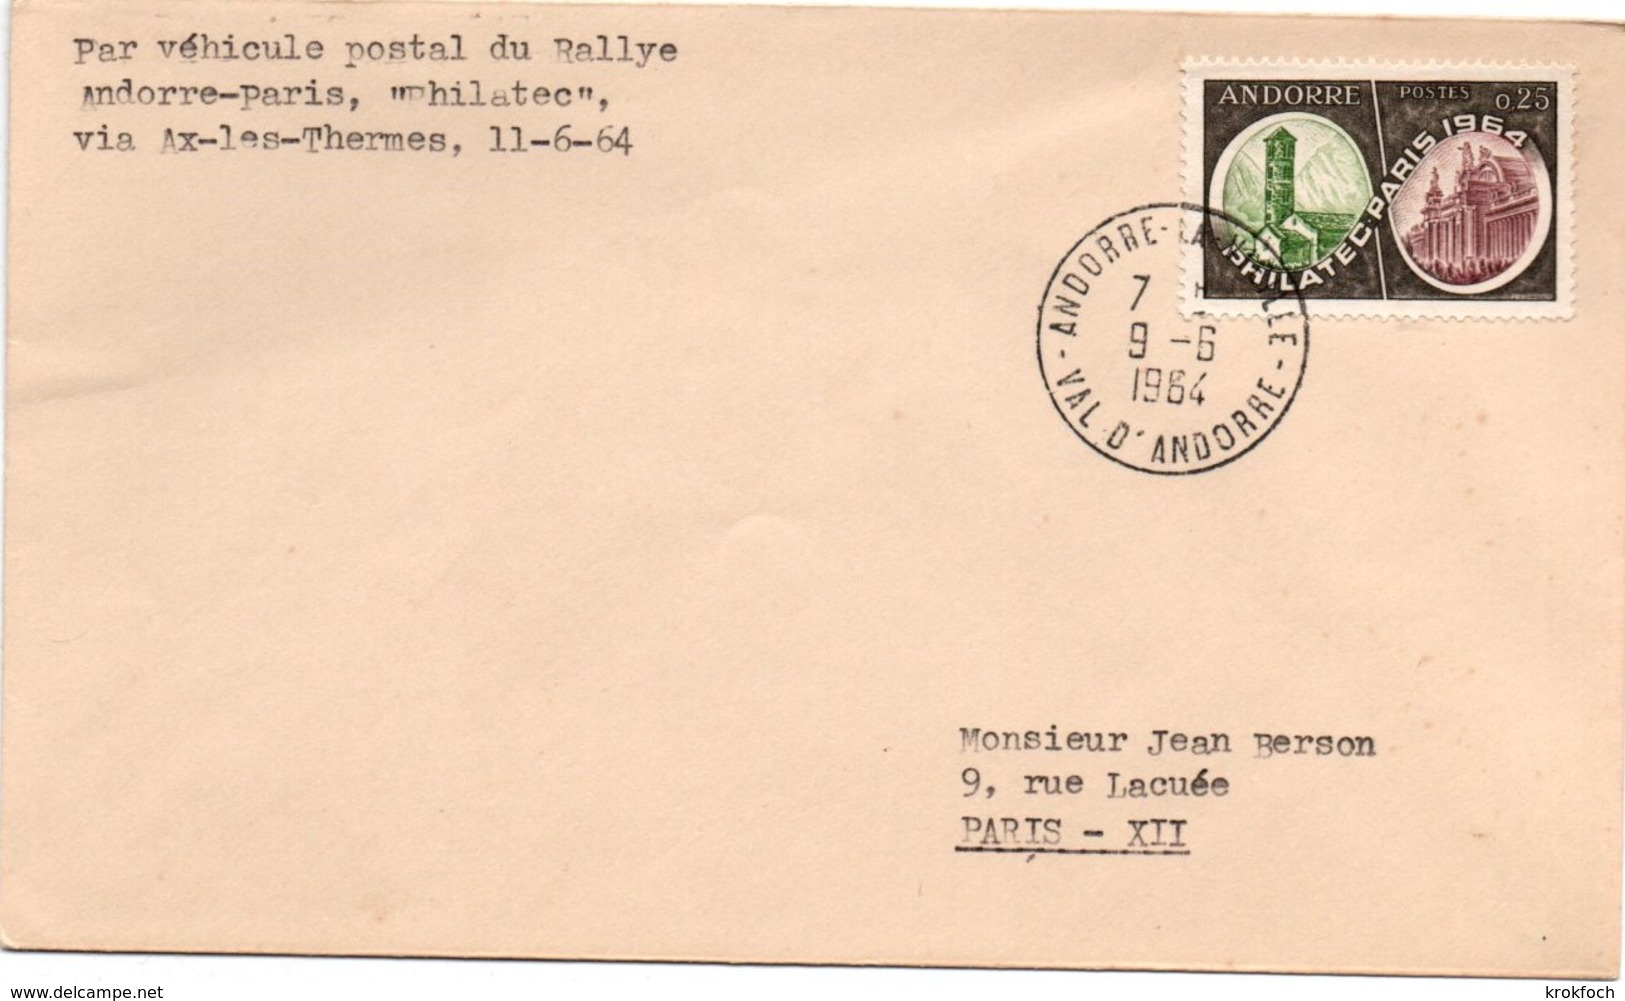 Andorre 1964 - Lettre Par Véhicule Postal Du Rallye Philatec Via Ax-les-Thermes - Lettres & Documents